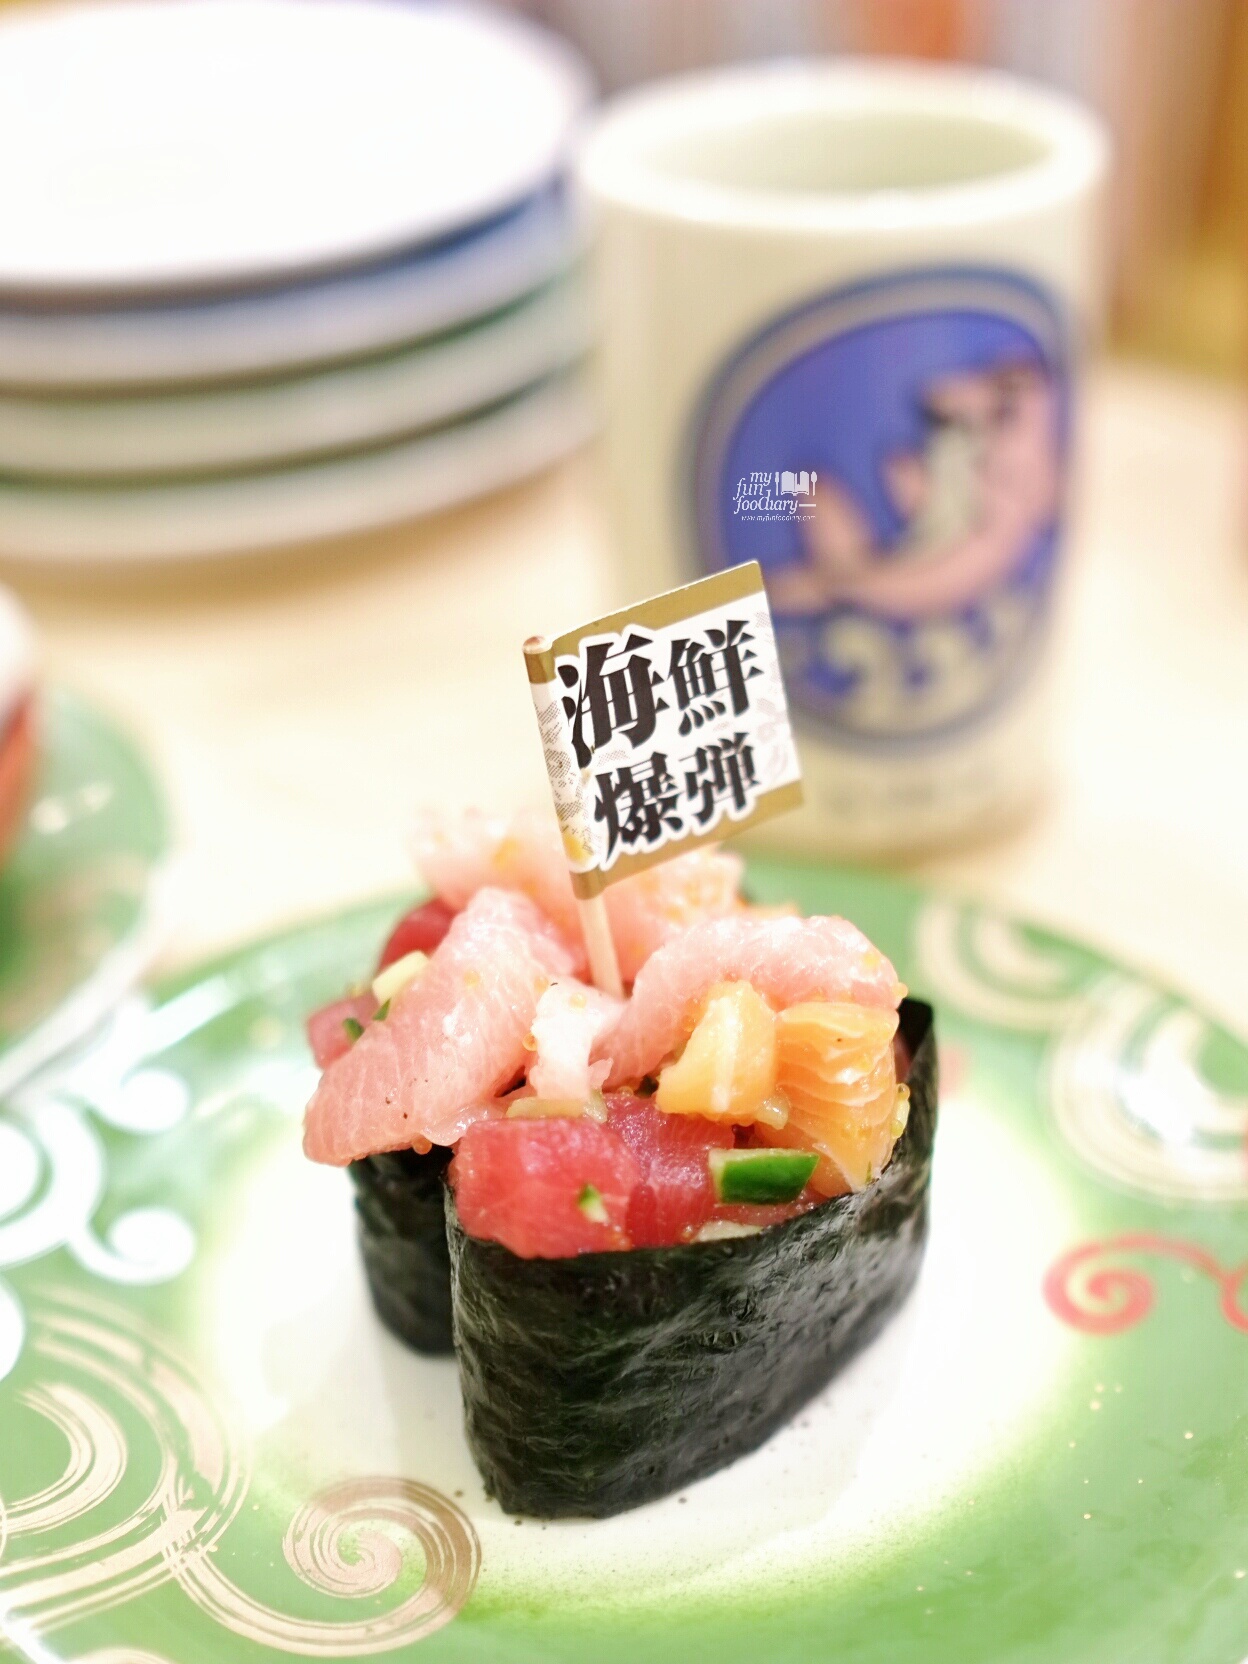 Mixed Sashimi Sushi at Toriton Sushi by Myfunfoodiary